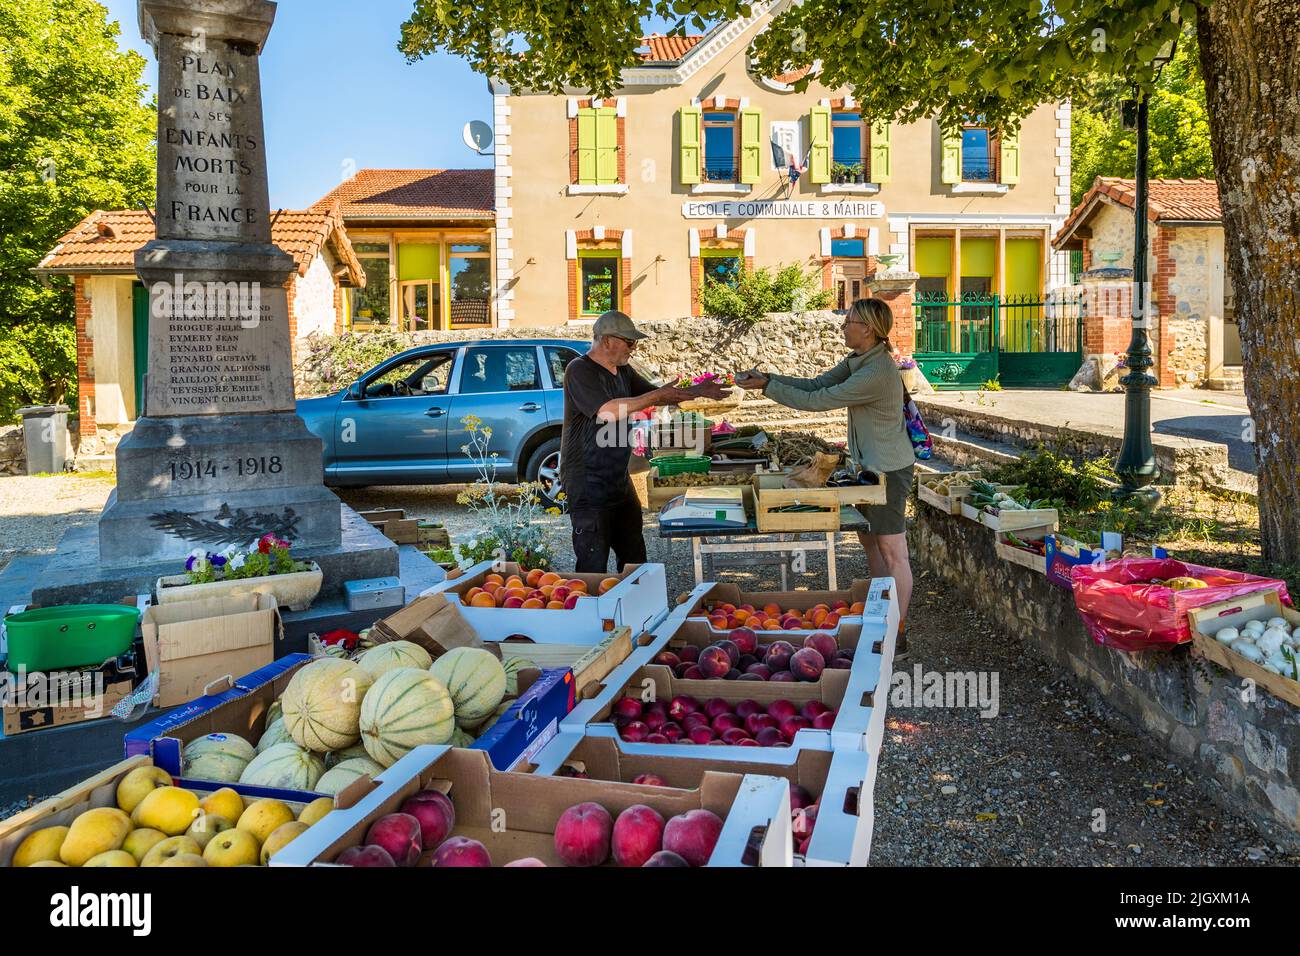 Semanalmente se lleva a cabo el mercado de producción en Plan-de-Baix (Die, Francia). La escritora de comida Angela Berg va de compras a uno de los pequeños mercados semanales típicos de un pueblo del valle de Drôme Foto de stock